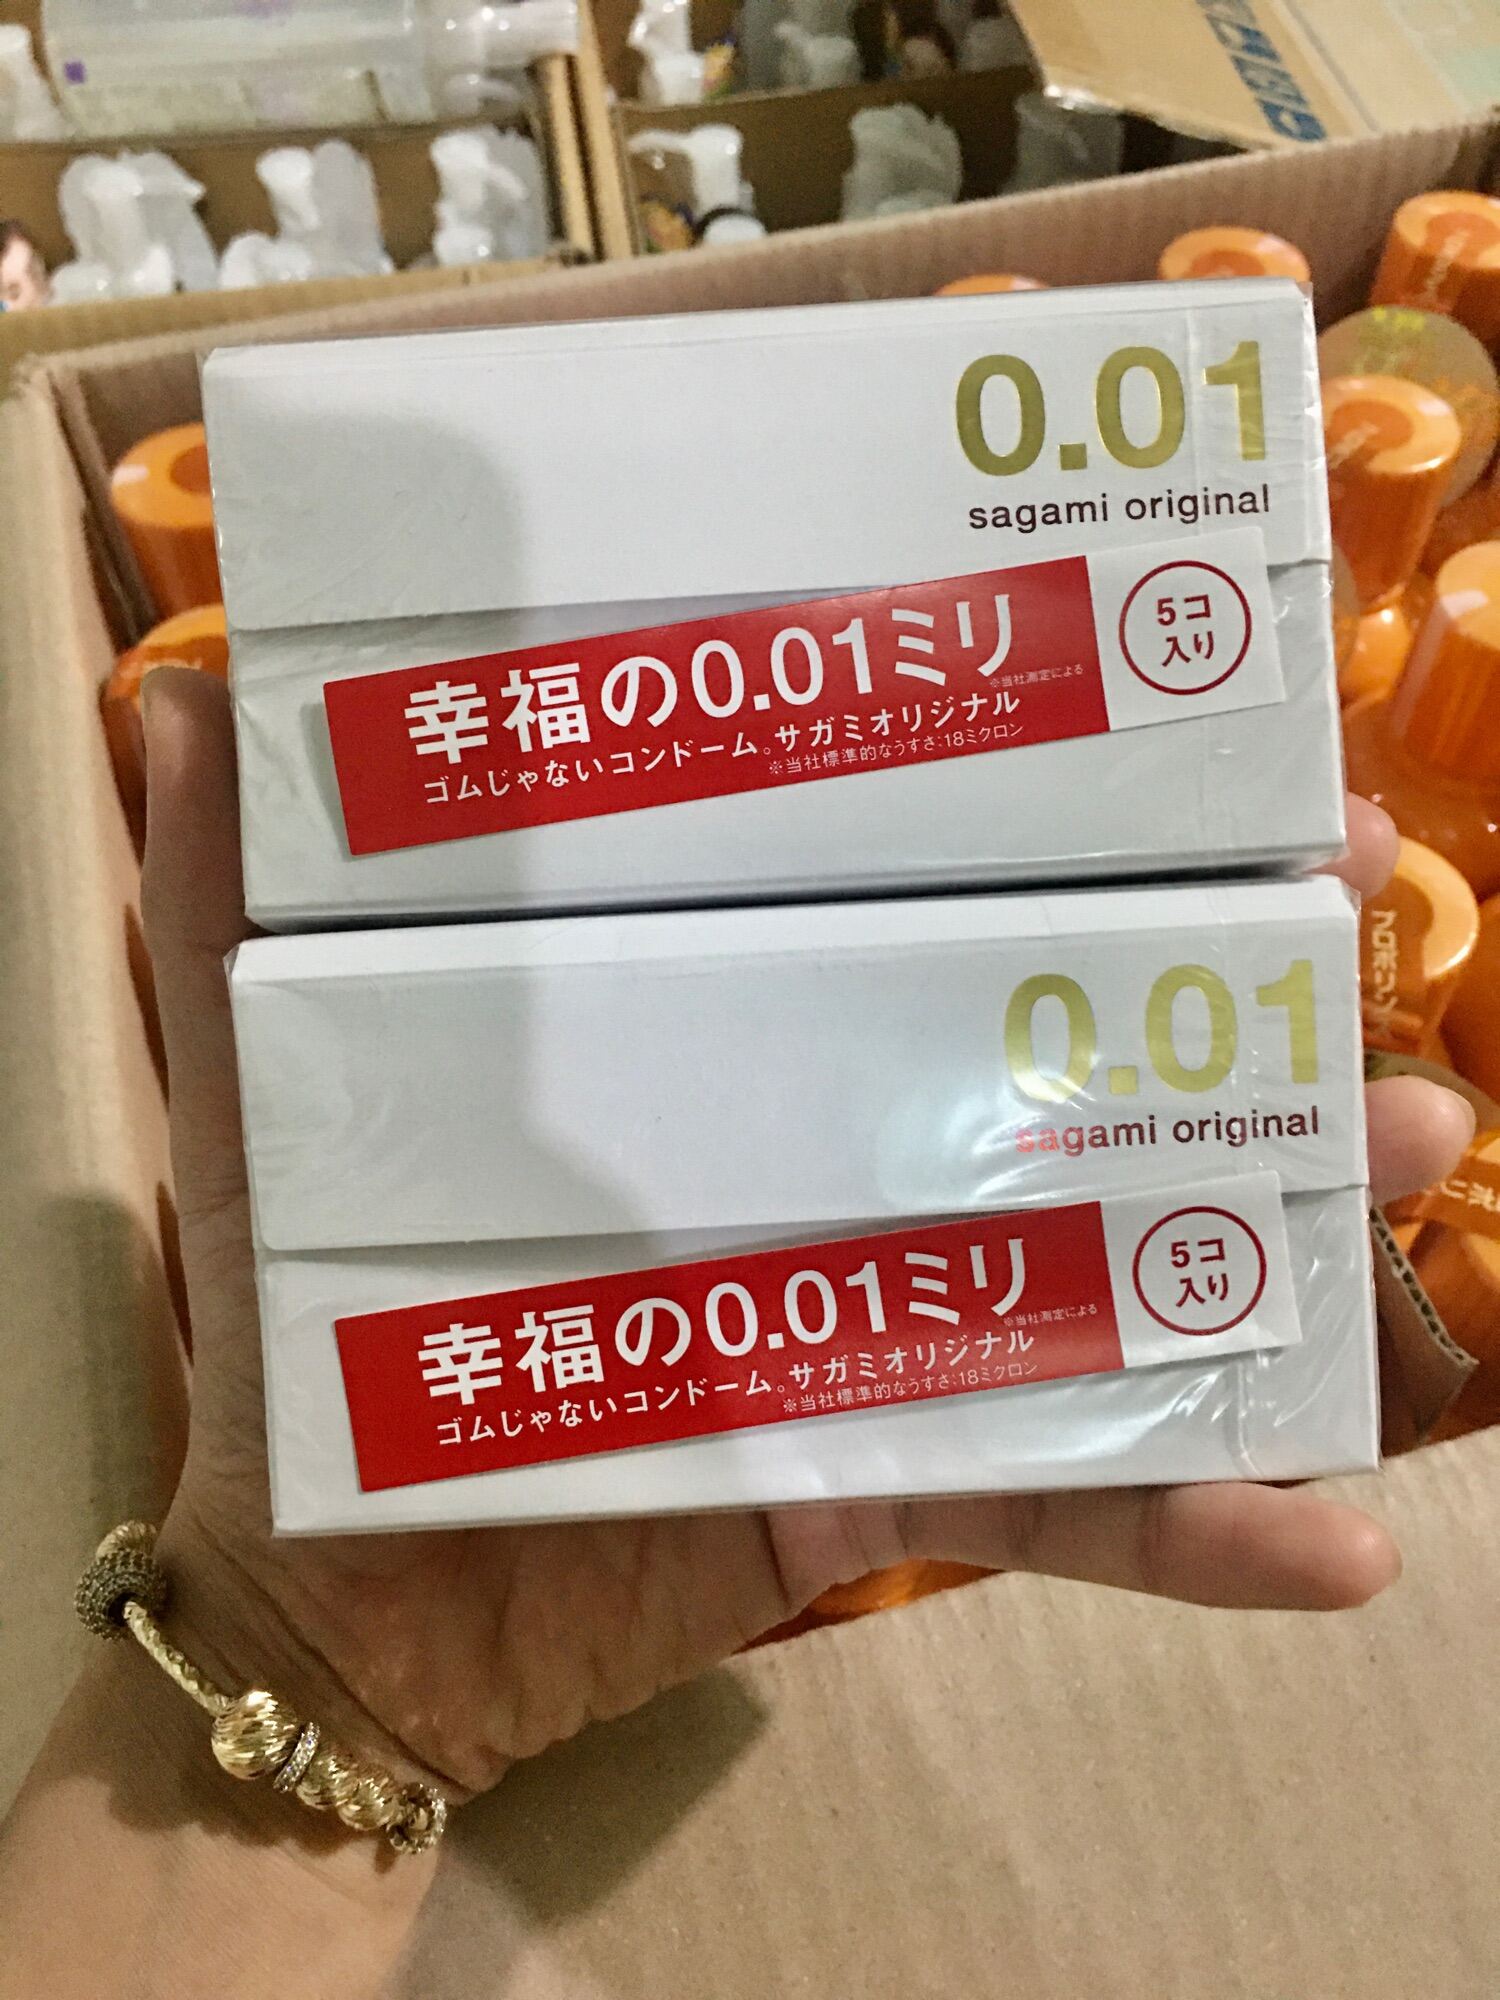 [Hoàn Tiền 15%] (Chuẩn auth) Bao cao su sagami original 0.01 nhật bản 5cái/hộp (Bao cao su Sagami 001)